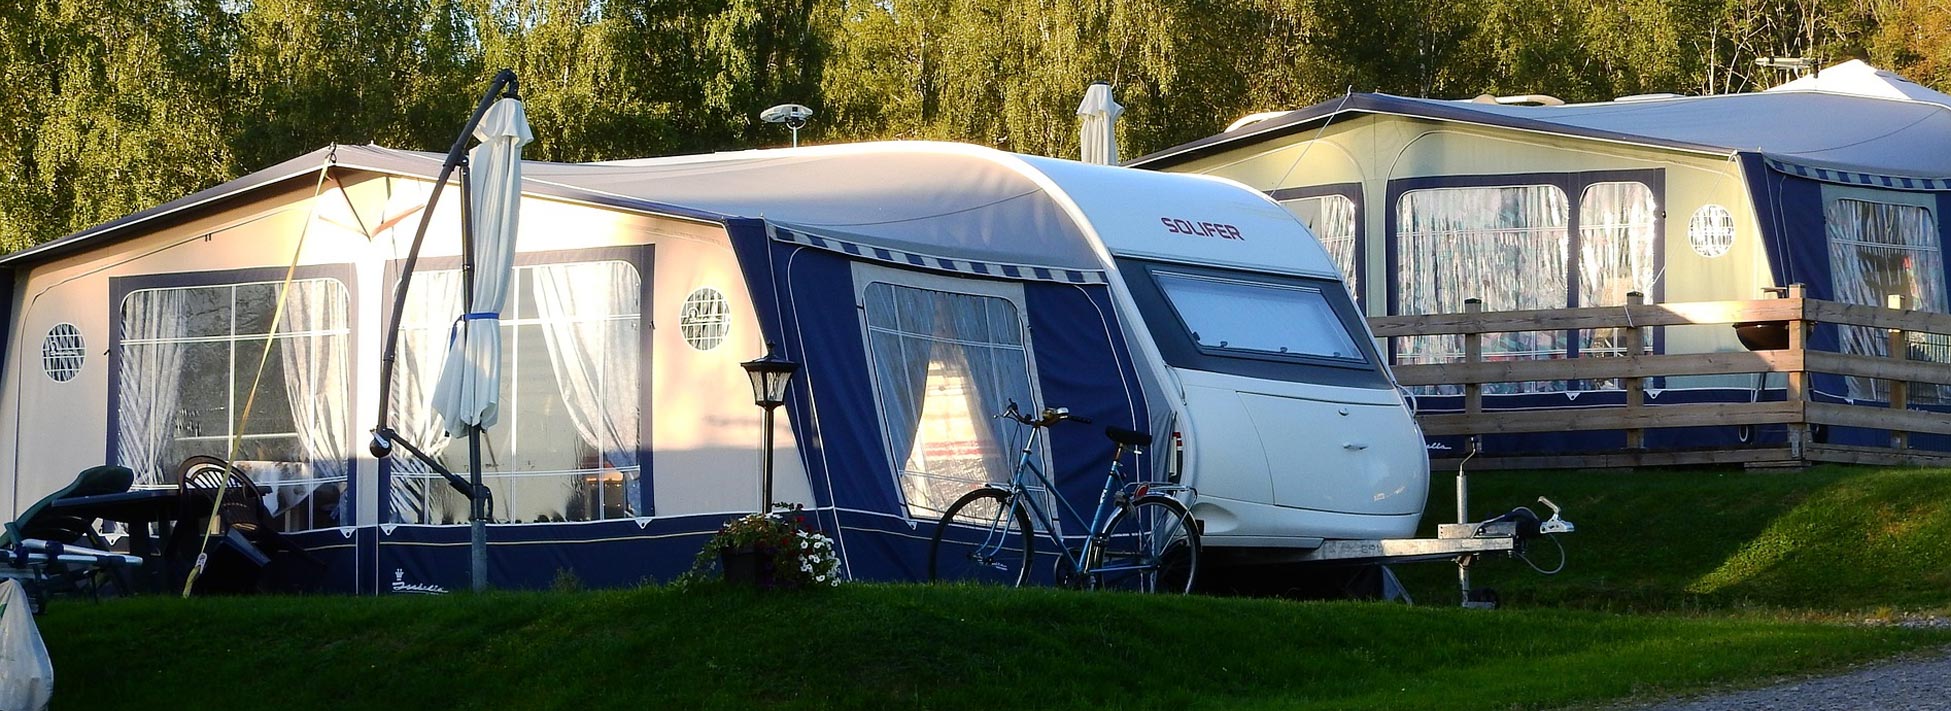 Campingplatz Eldorado - Camping am Niederrhein in NRW